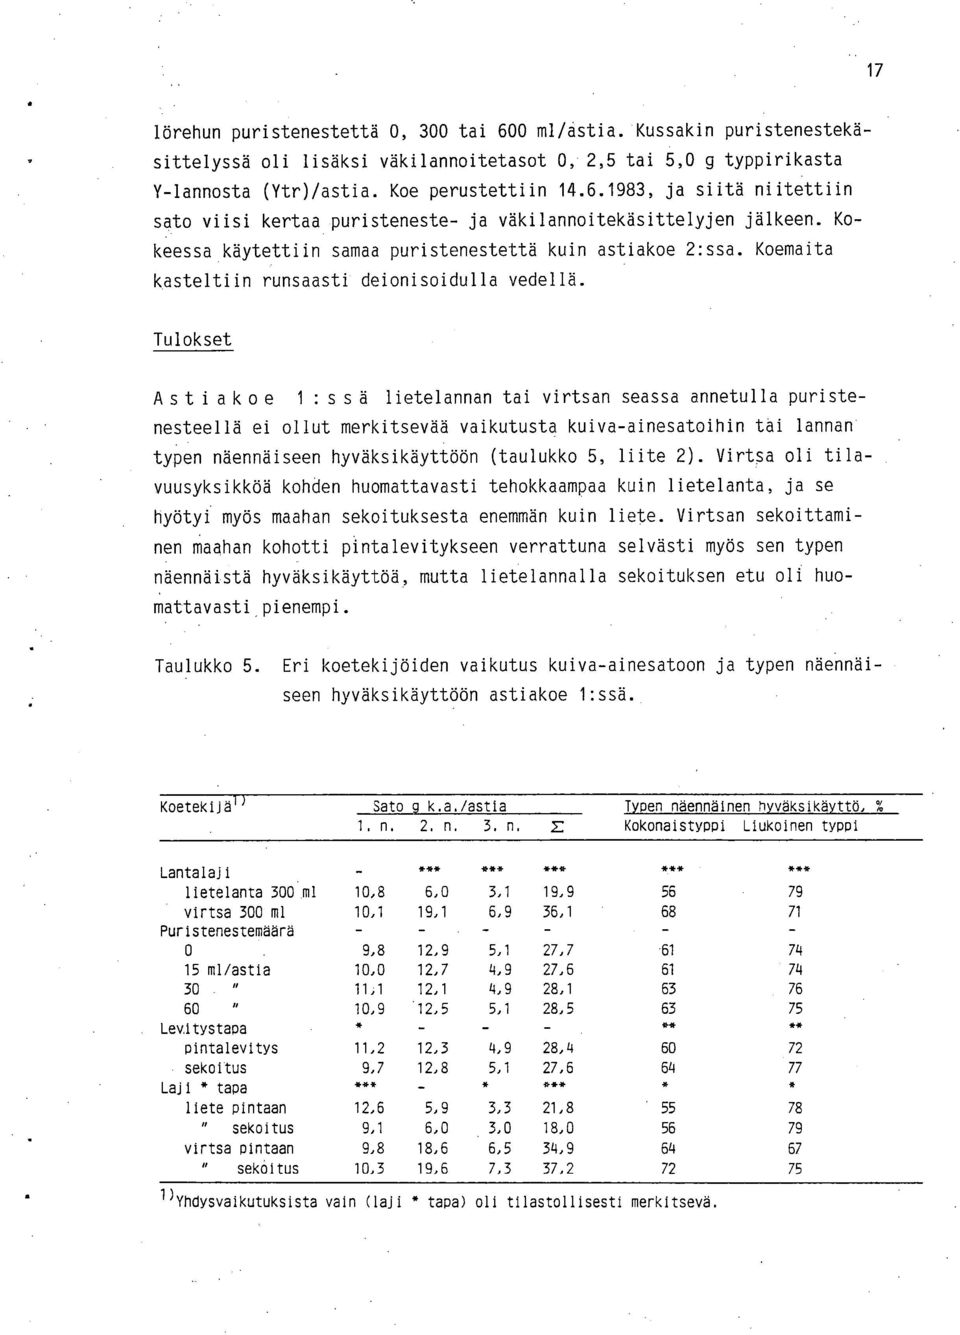 Tulokset Astiakoe 1 :ssä lietelannan tai virtsan seassa annetulla puristenesteellä ei ollut merkitsevää vaikutusta kuiva-ainesatoihin tai lannan typen näennäiseen hyväksikäyttöön (taulukko 5, liite